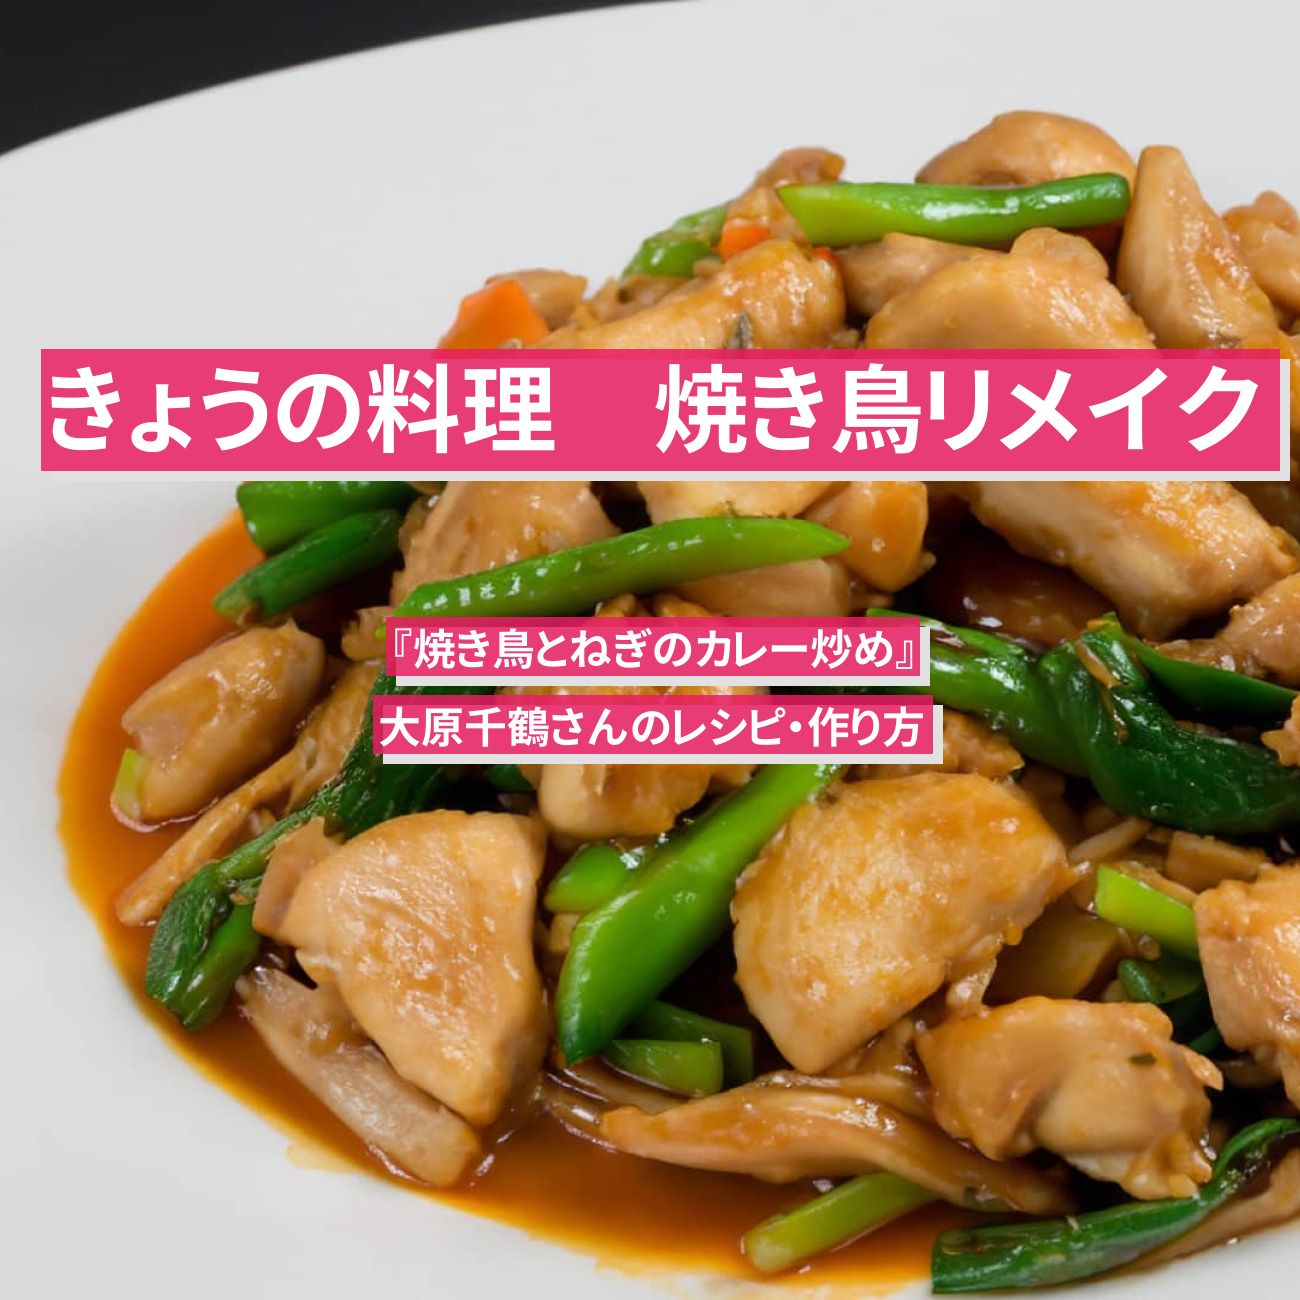 【きょうの料理】焼き鳥リメイク『焼き鳥とねぎのカレー炒め』大原千鶴さんのレシピ・作り方